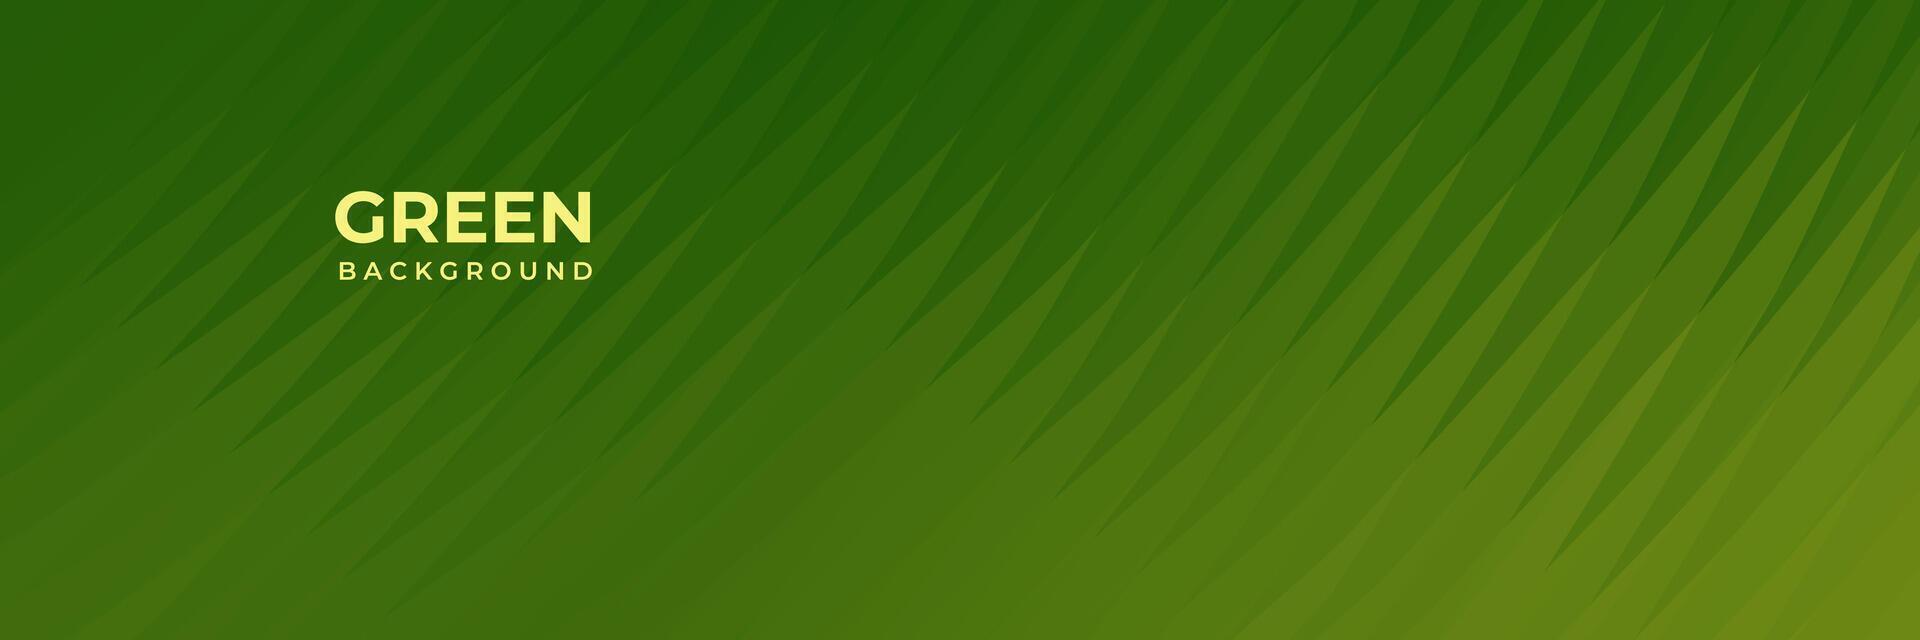 grön gul bakgrund med randig rader vektor